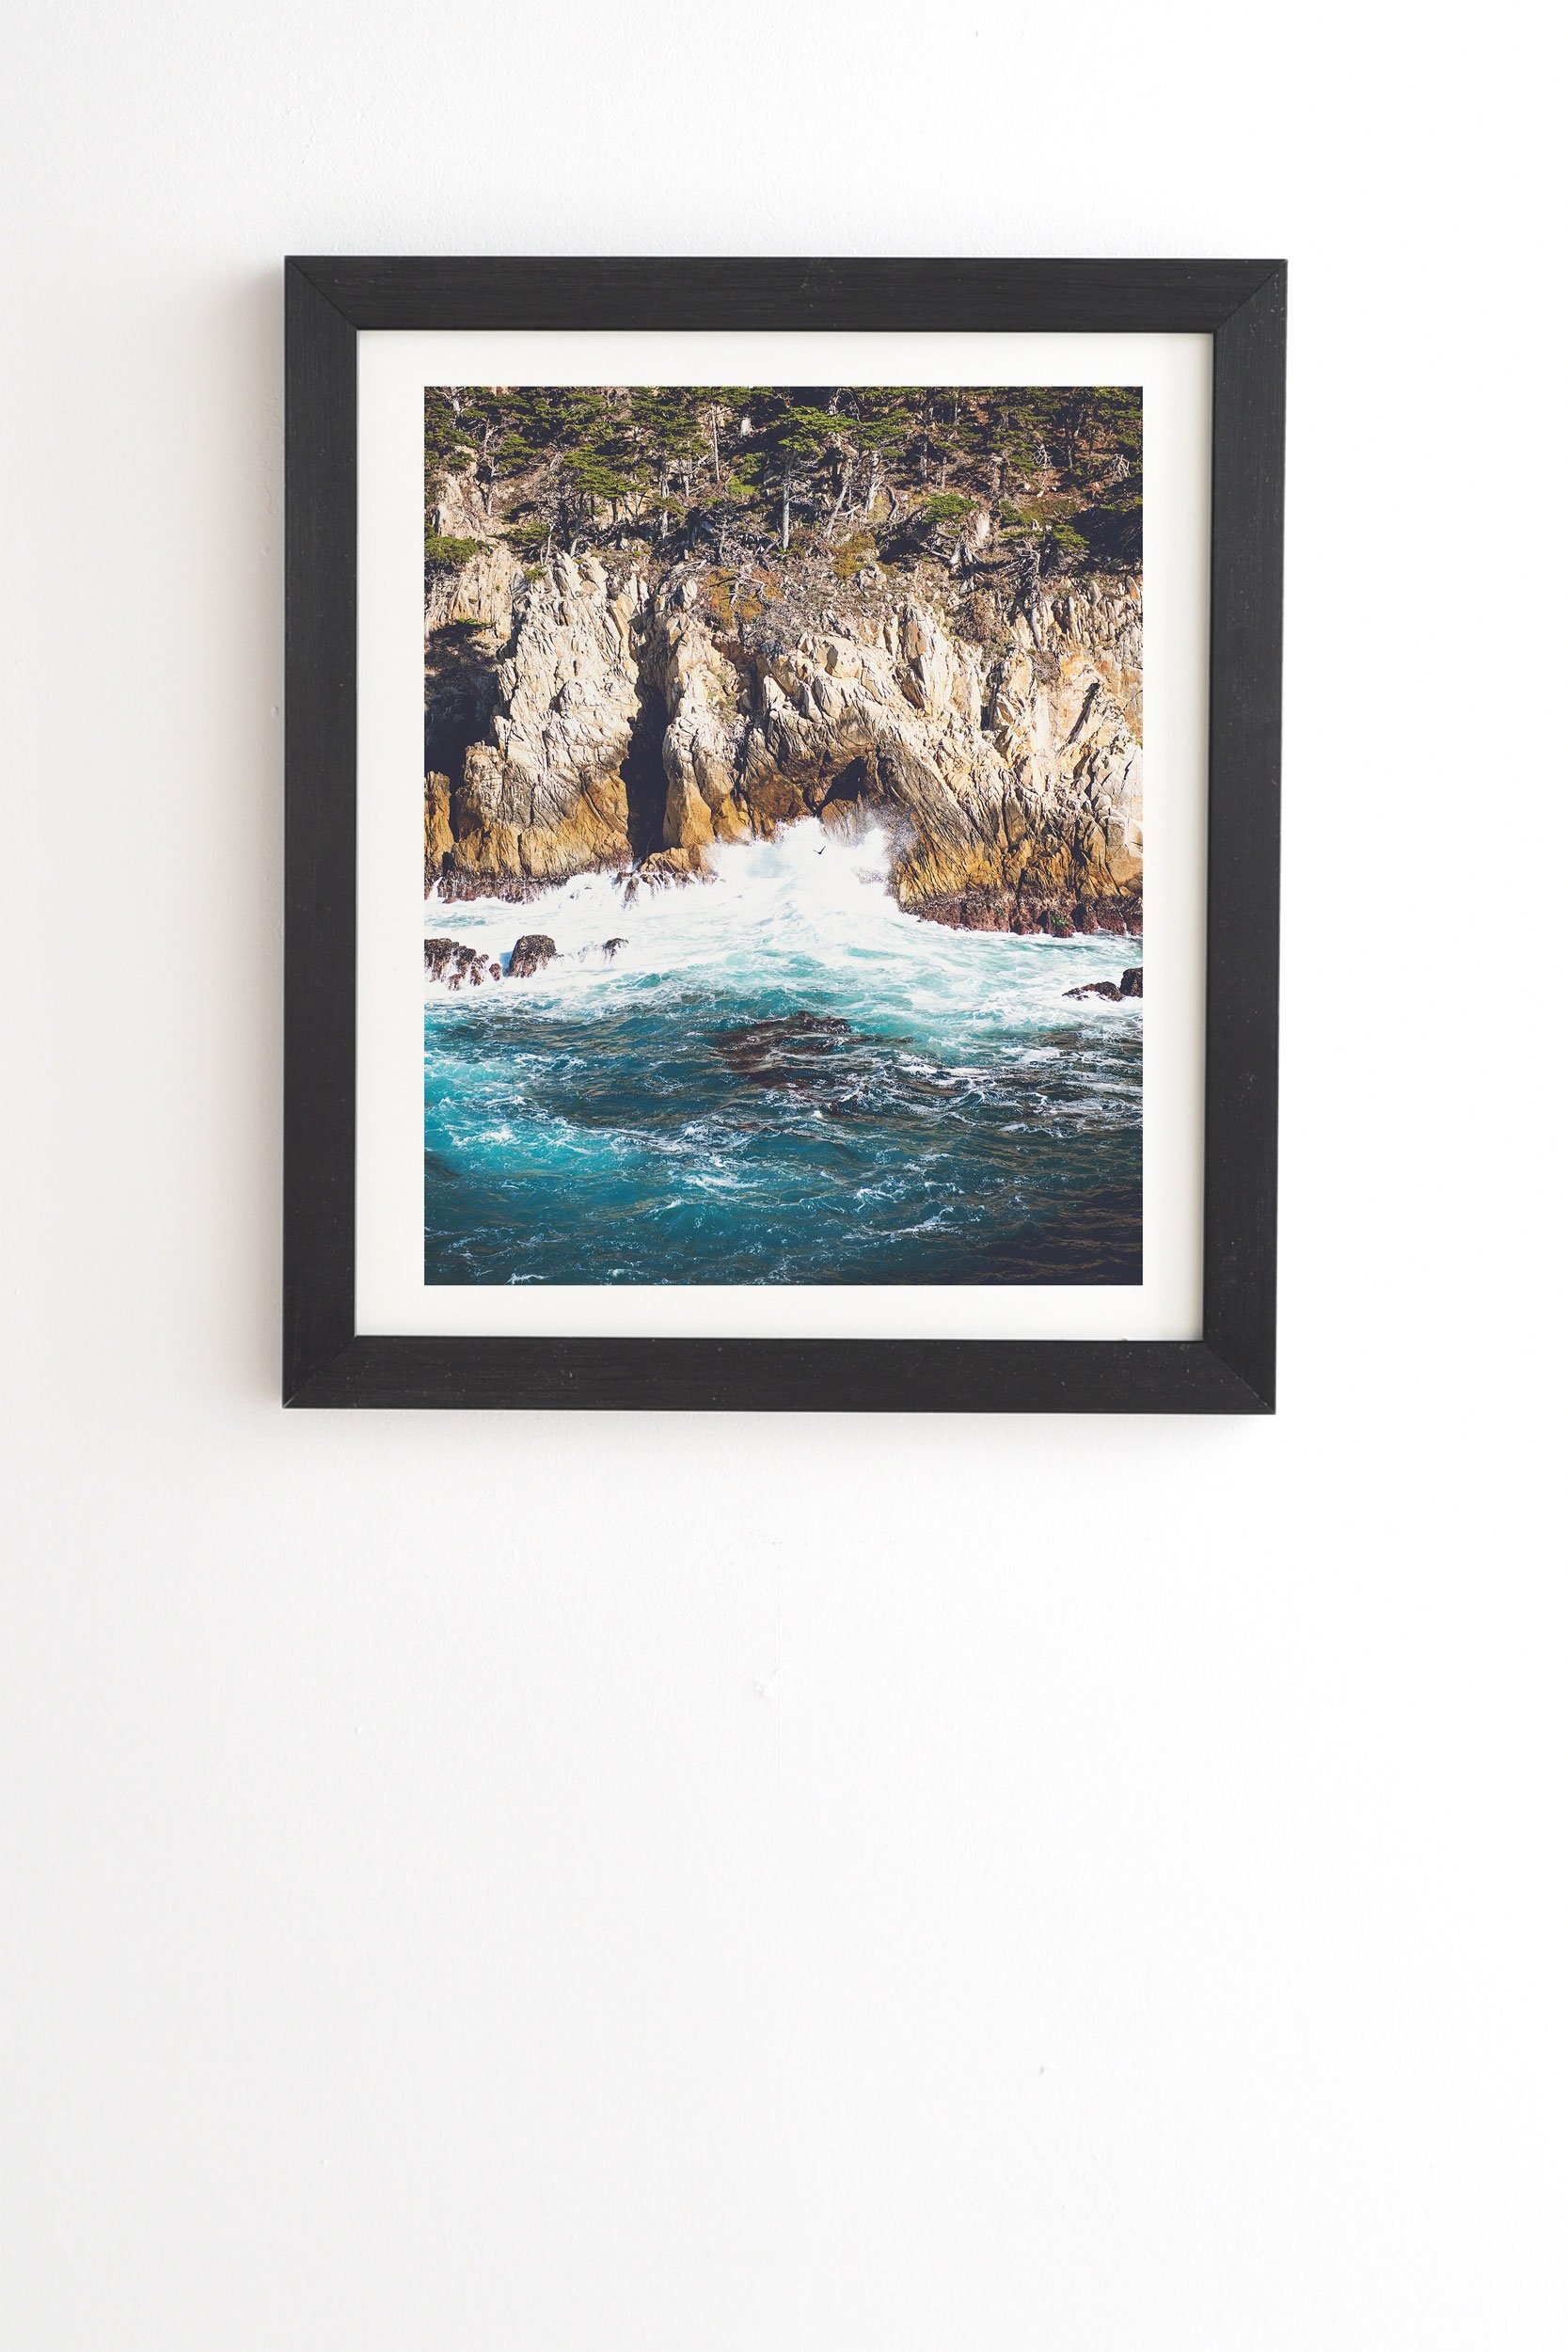 Bree Madden Land Sea Black Framed Wall Art - 30" x 30" - Image 0